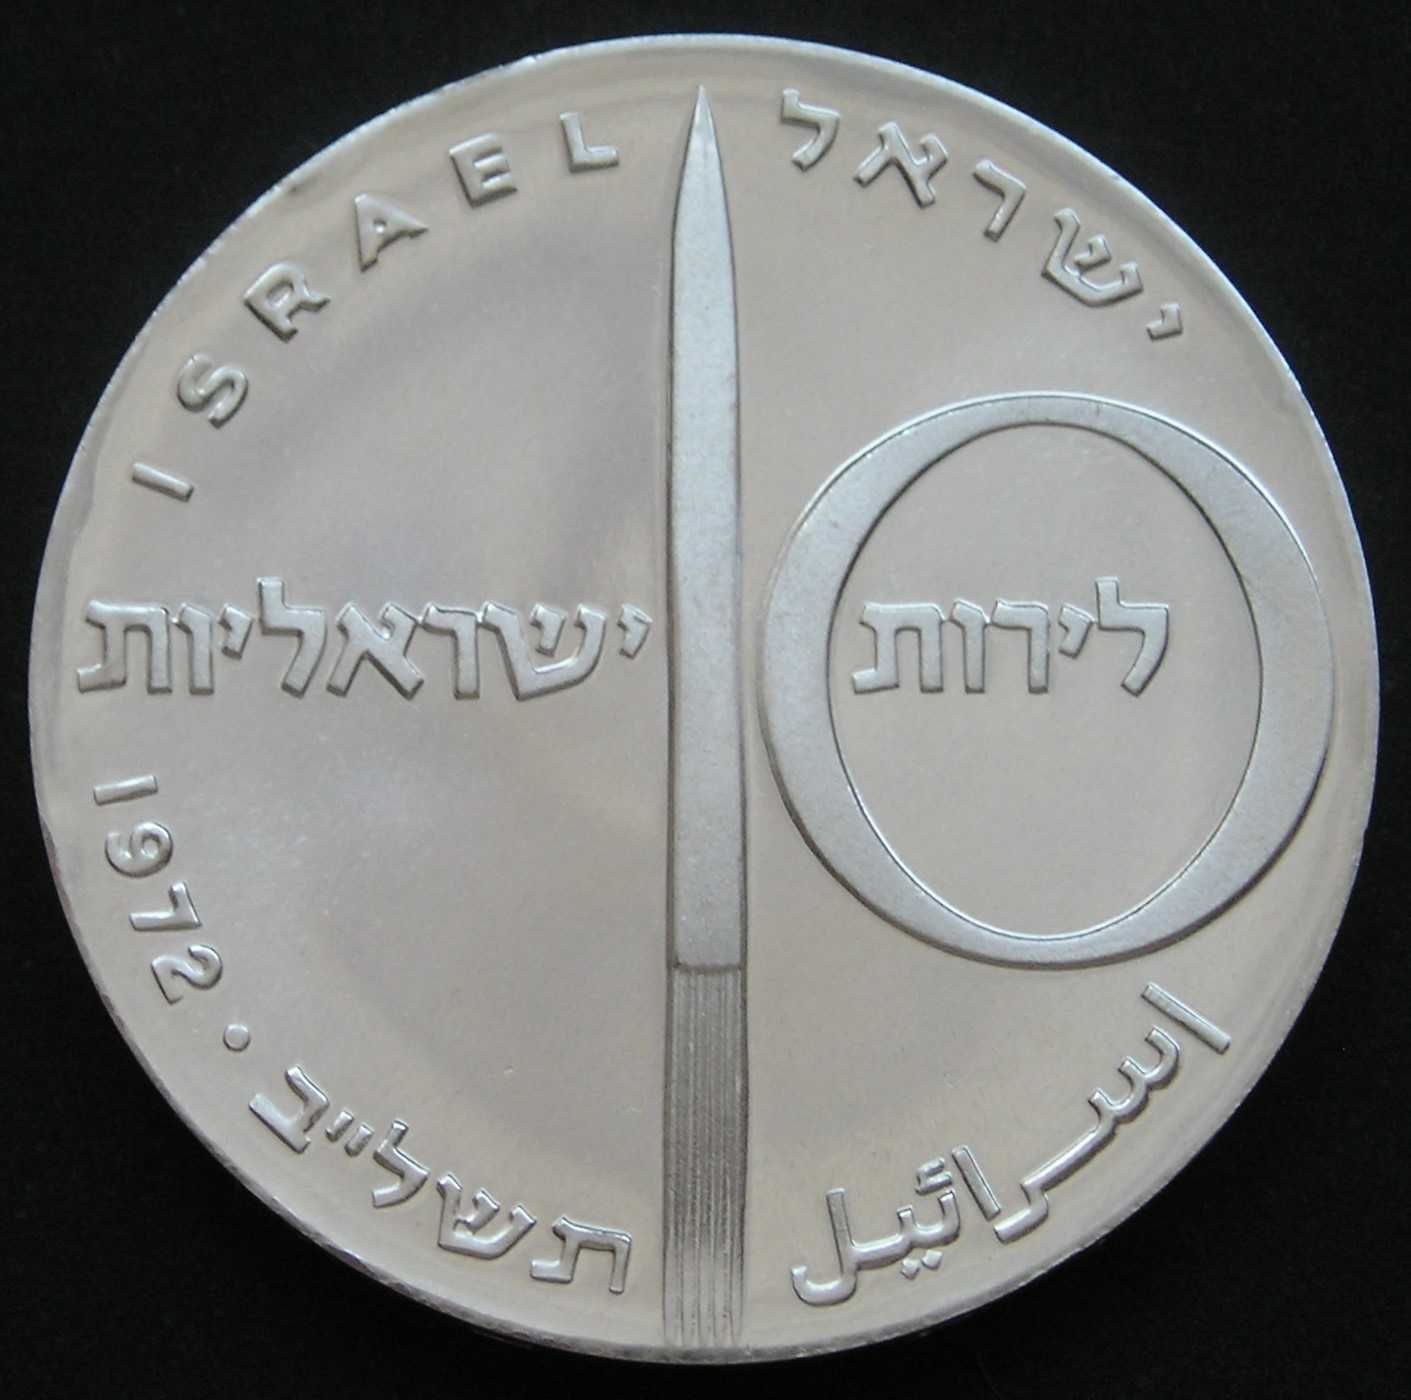 Izrael 10 lirot 1972 - rocznica niepodległości - srebro - stan 1 -